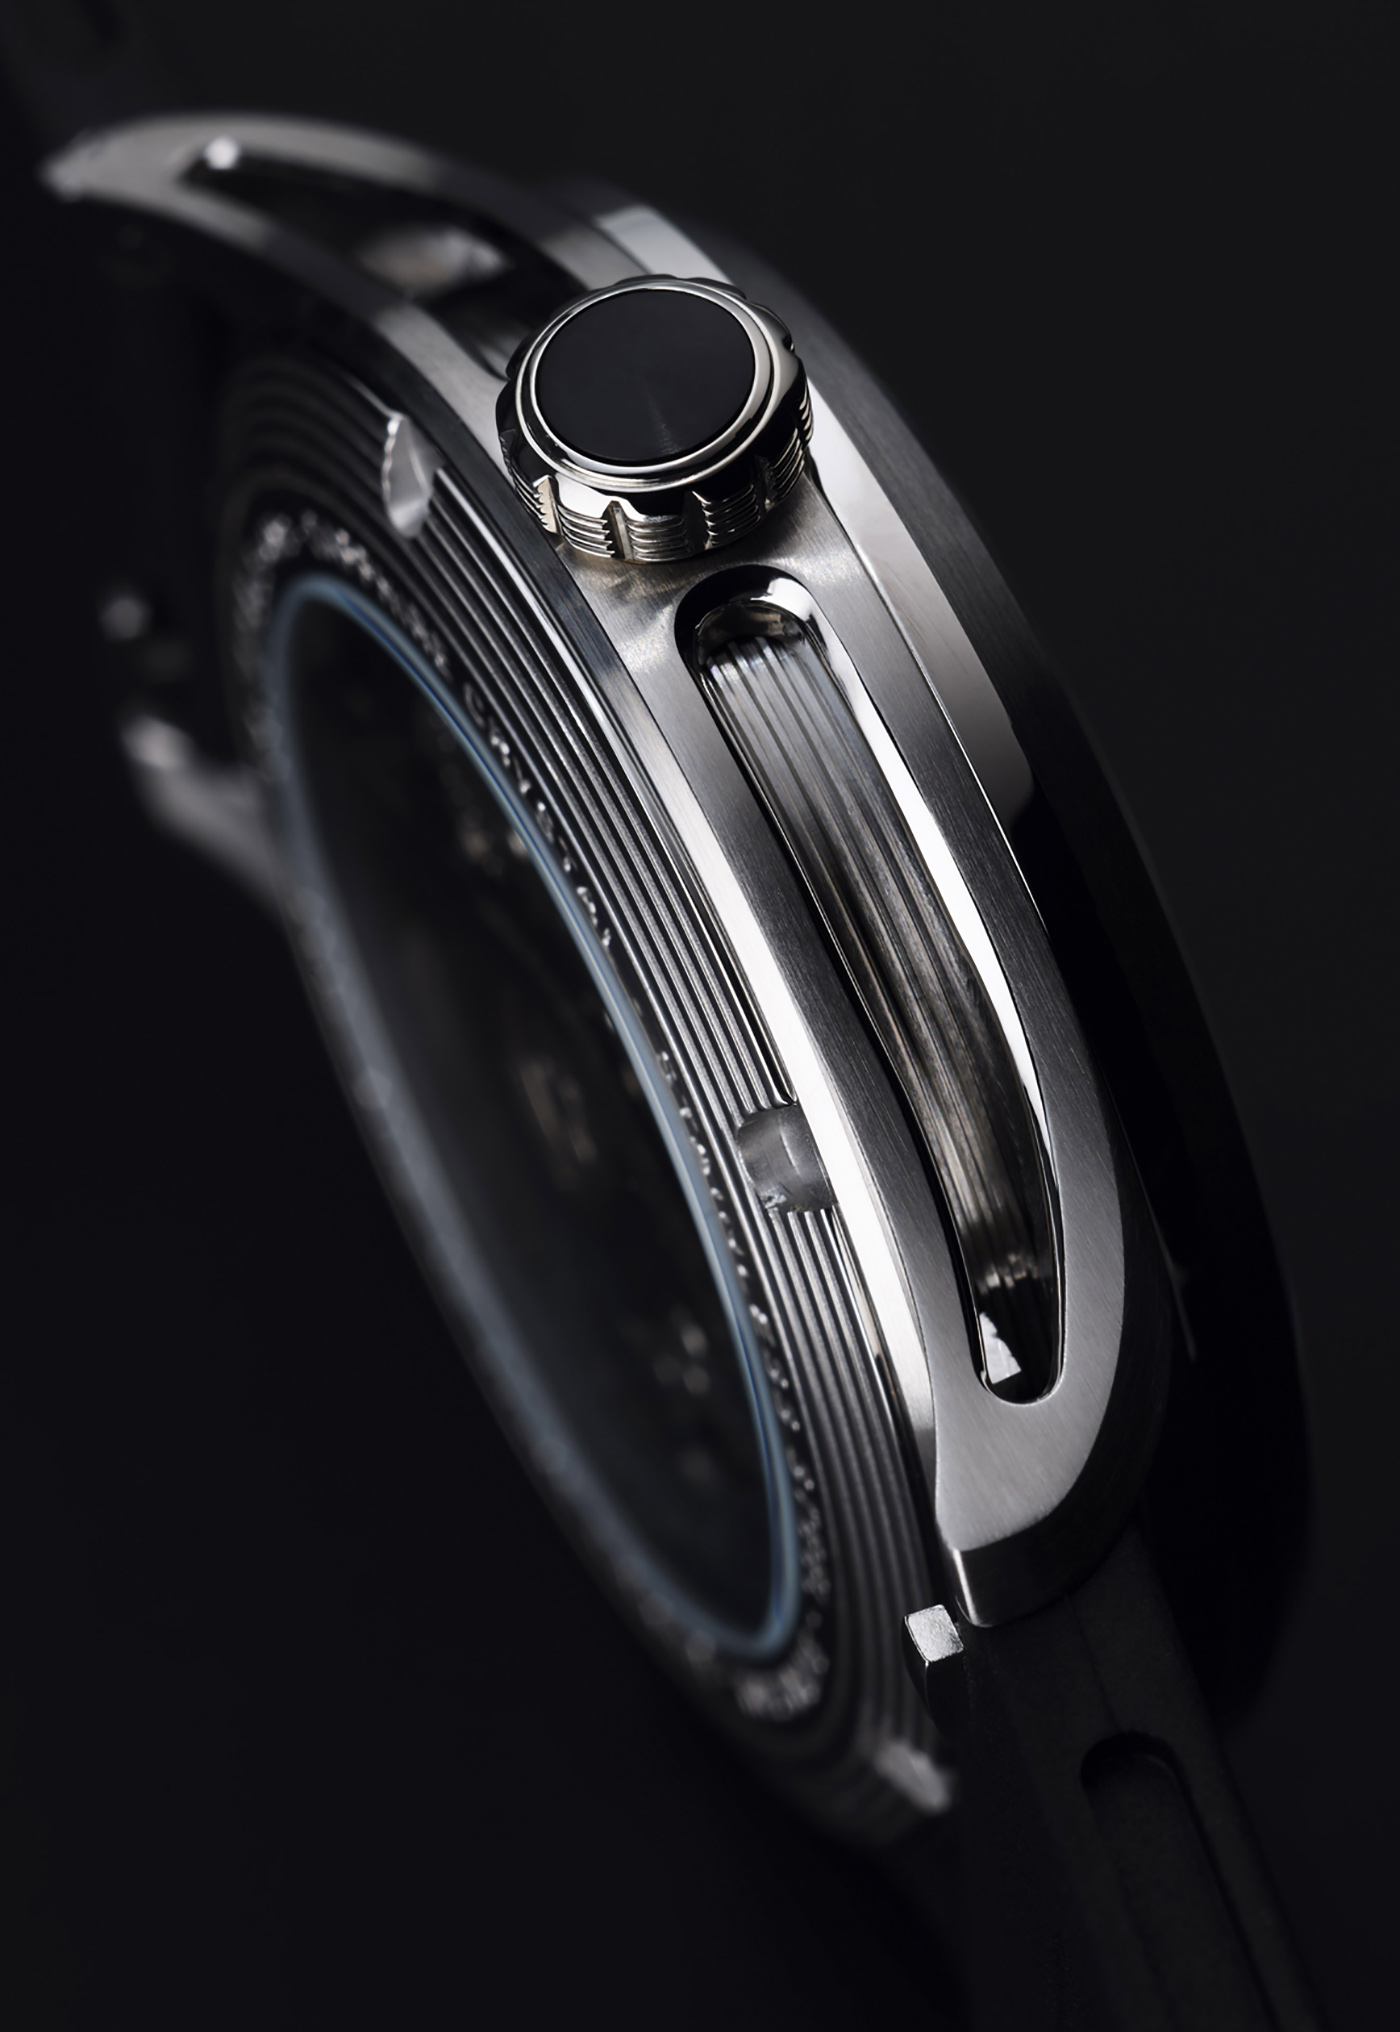 Timex Giorgio Galli S1 Automatic 38mm: Rẻ bền đẹp cho anh em cổ tay bé, giá  450 USD